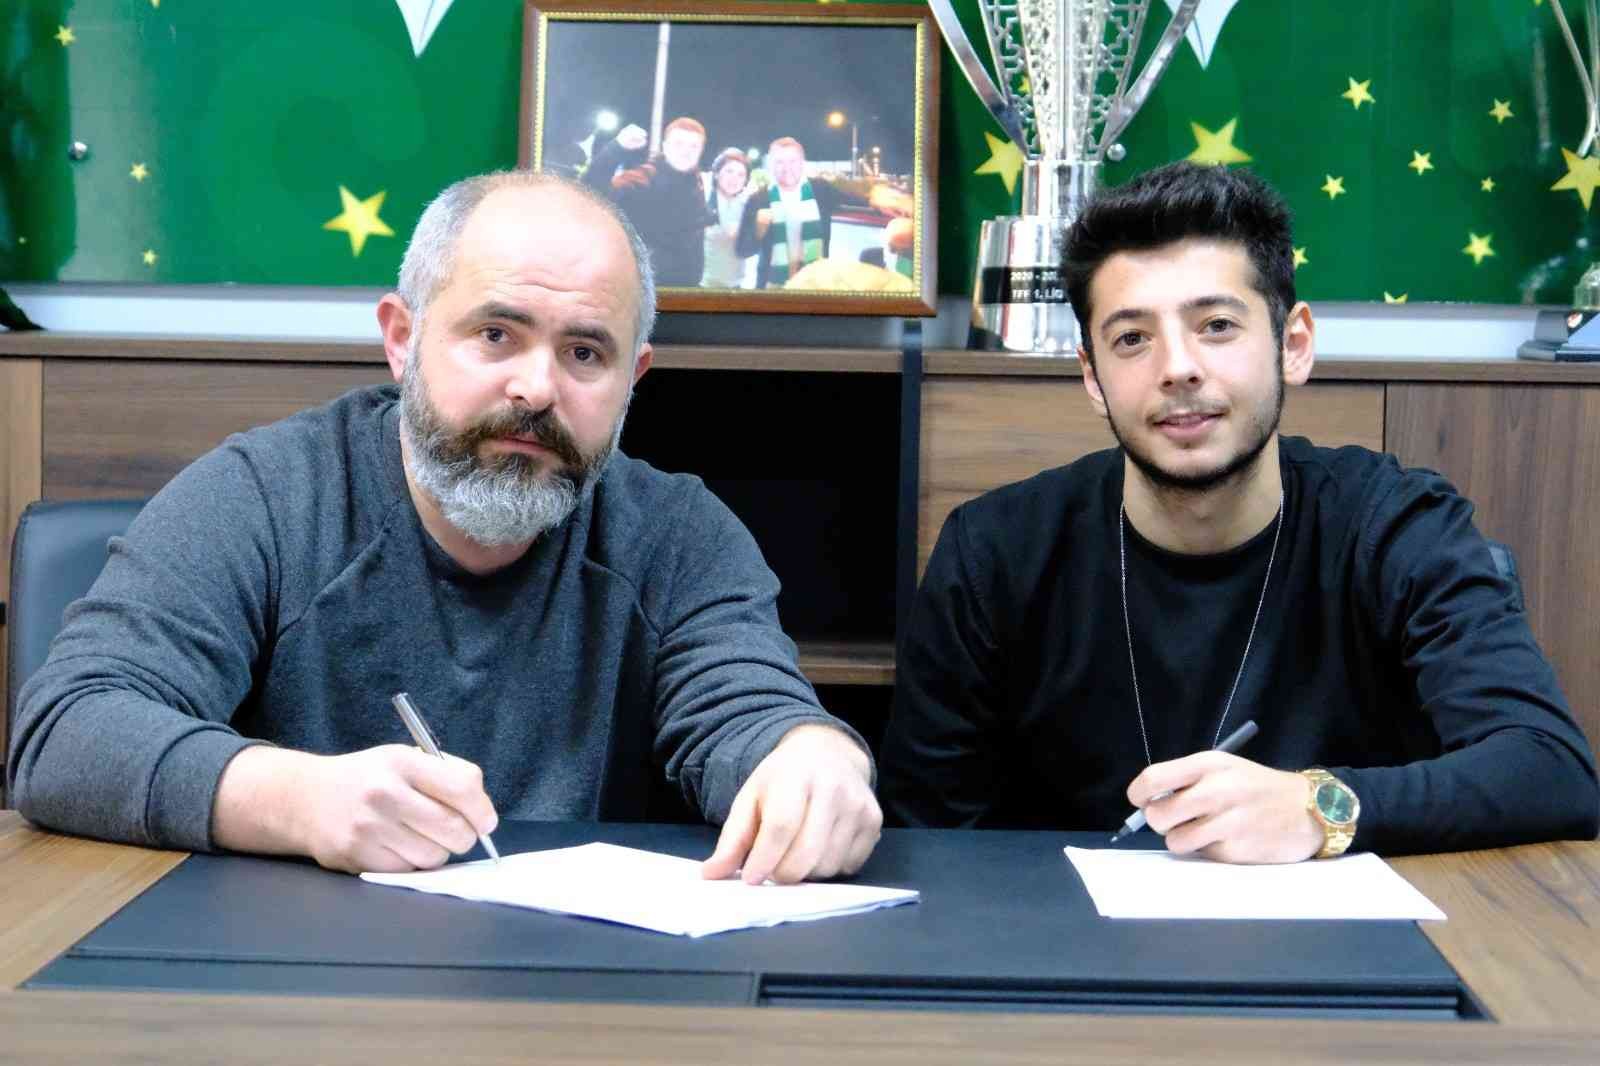 Giresunspor, Muhammed Gümüşkaya ile sözleşme imzaladı #giresun